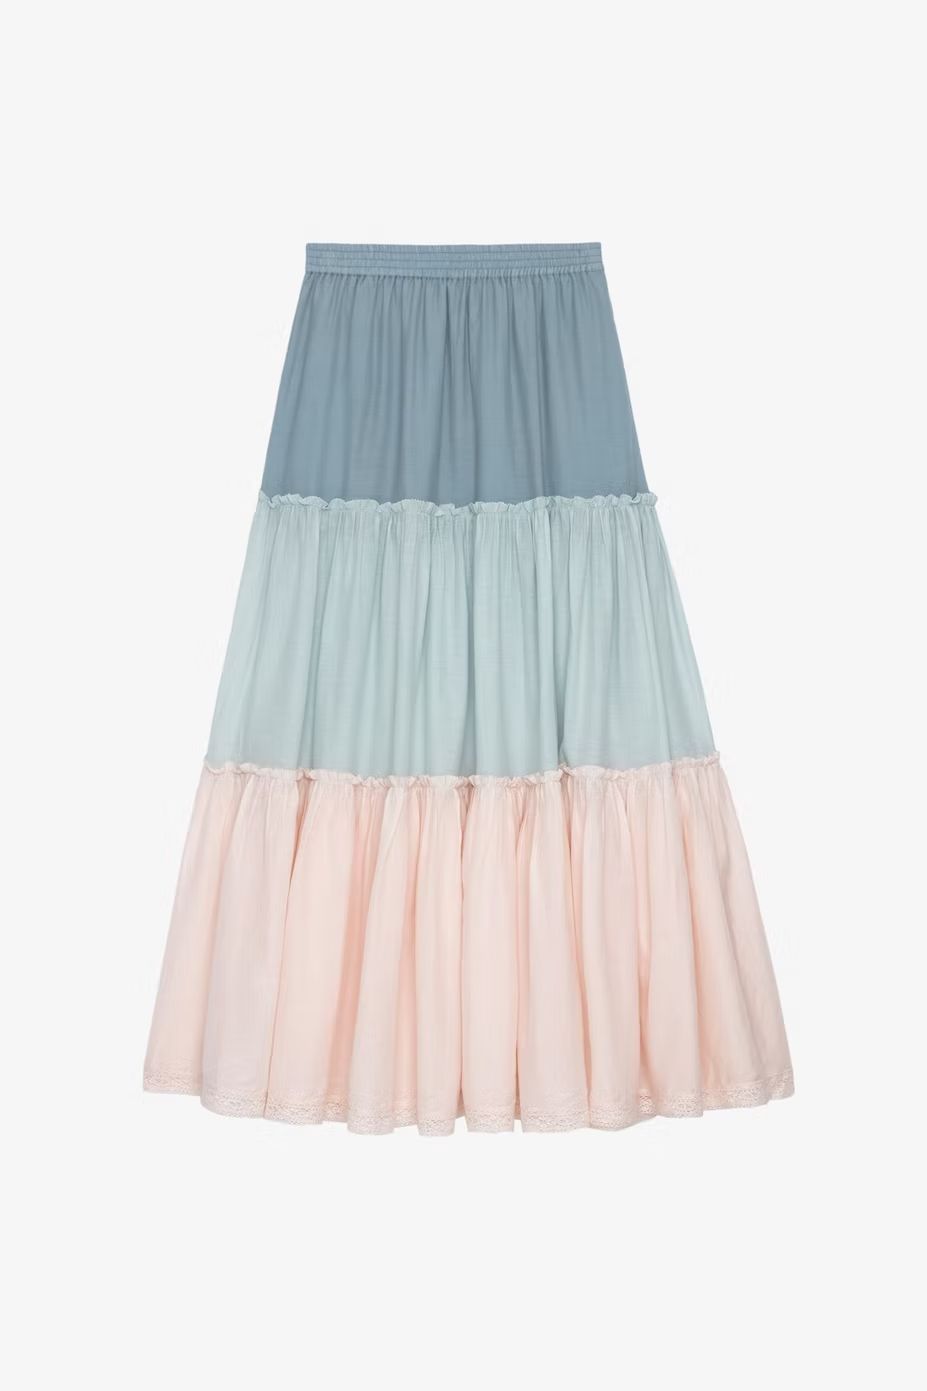 Las 20 faldas largas más bonitas para primavera 2023